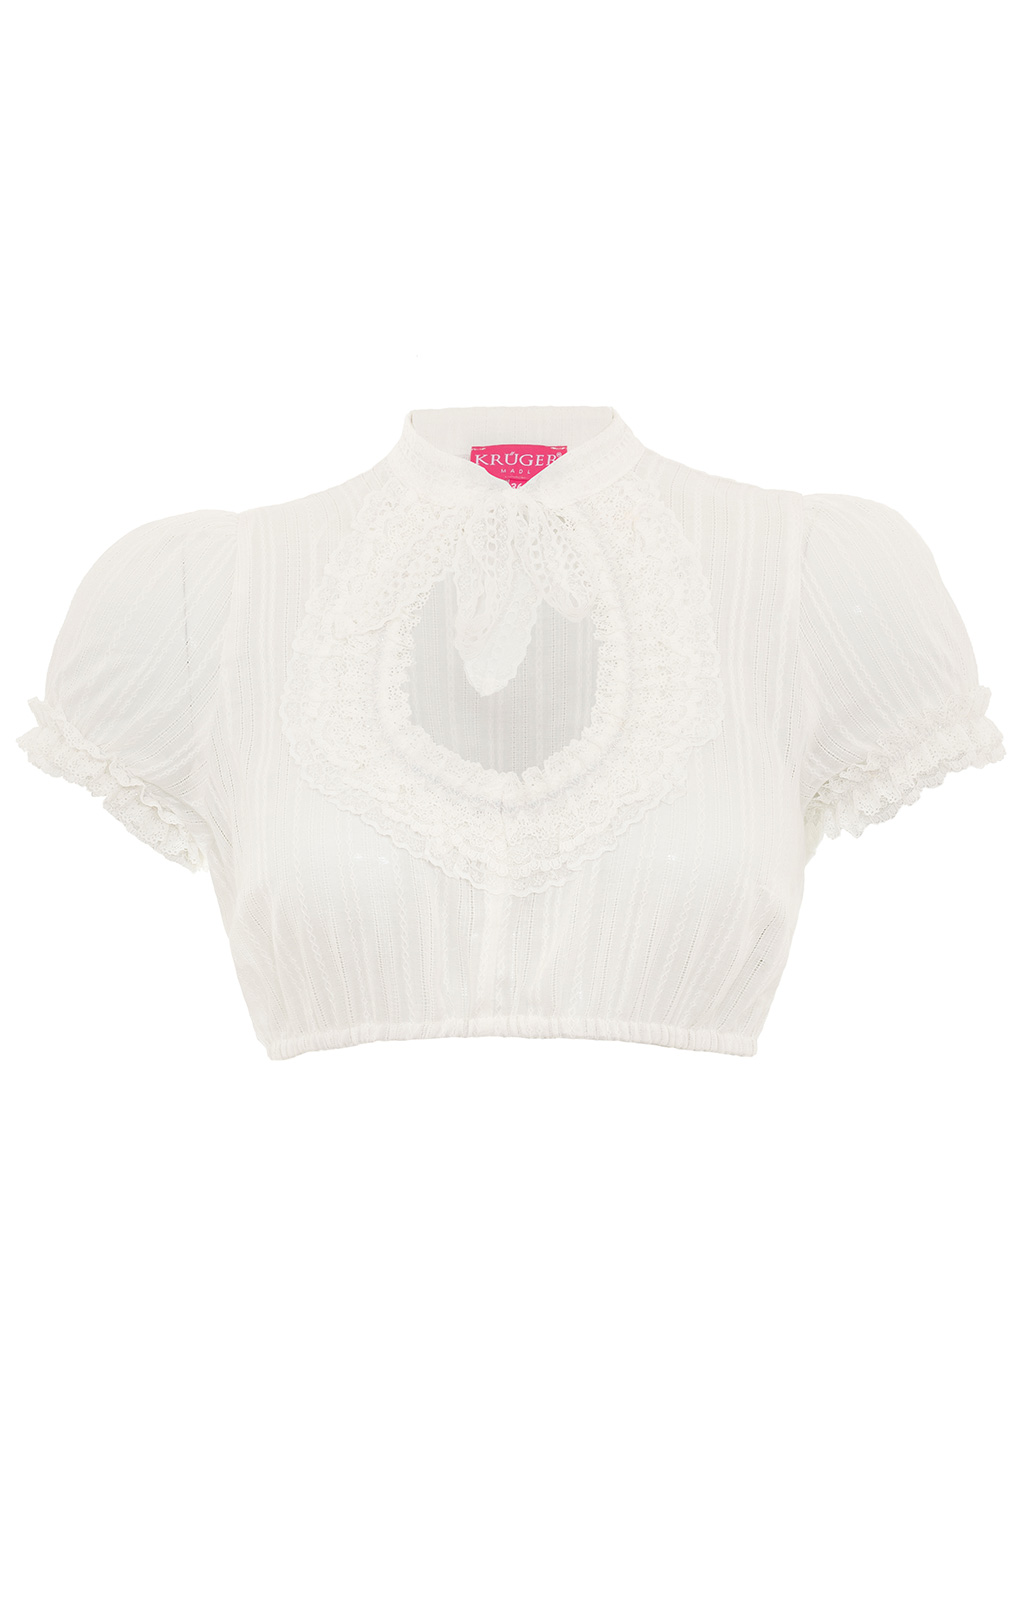 weitere Bilder von Traditional dirndl blouse LISA ecru